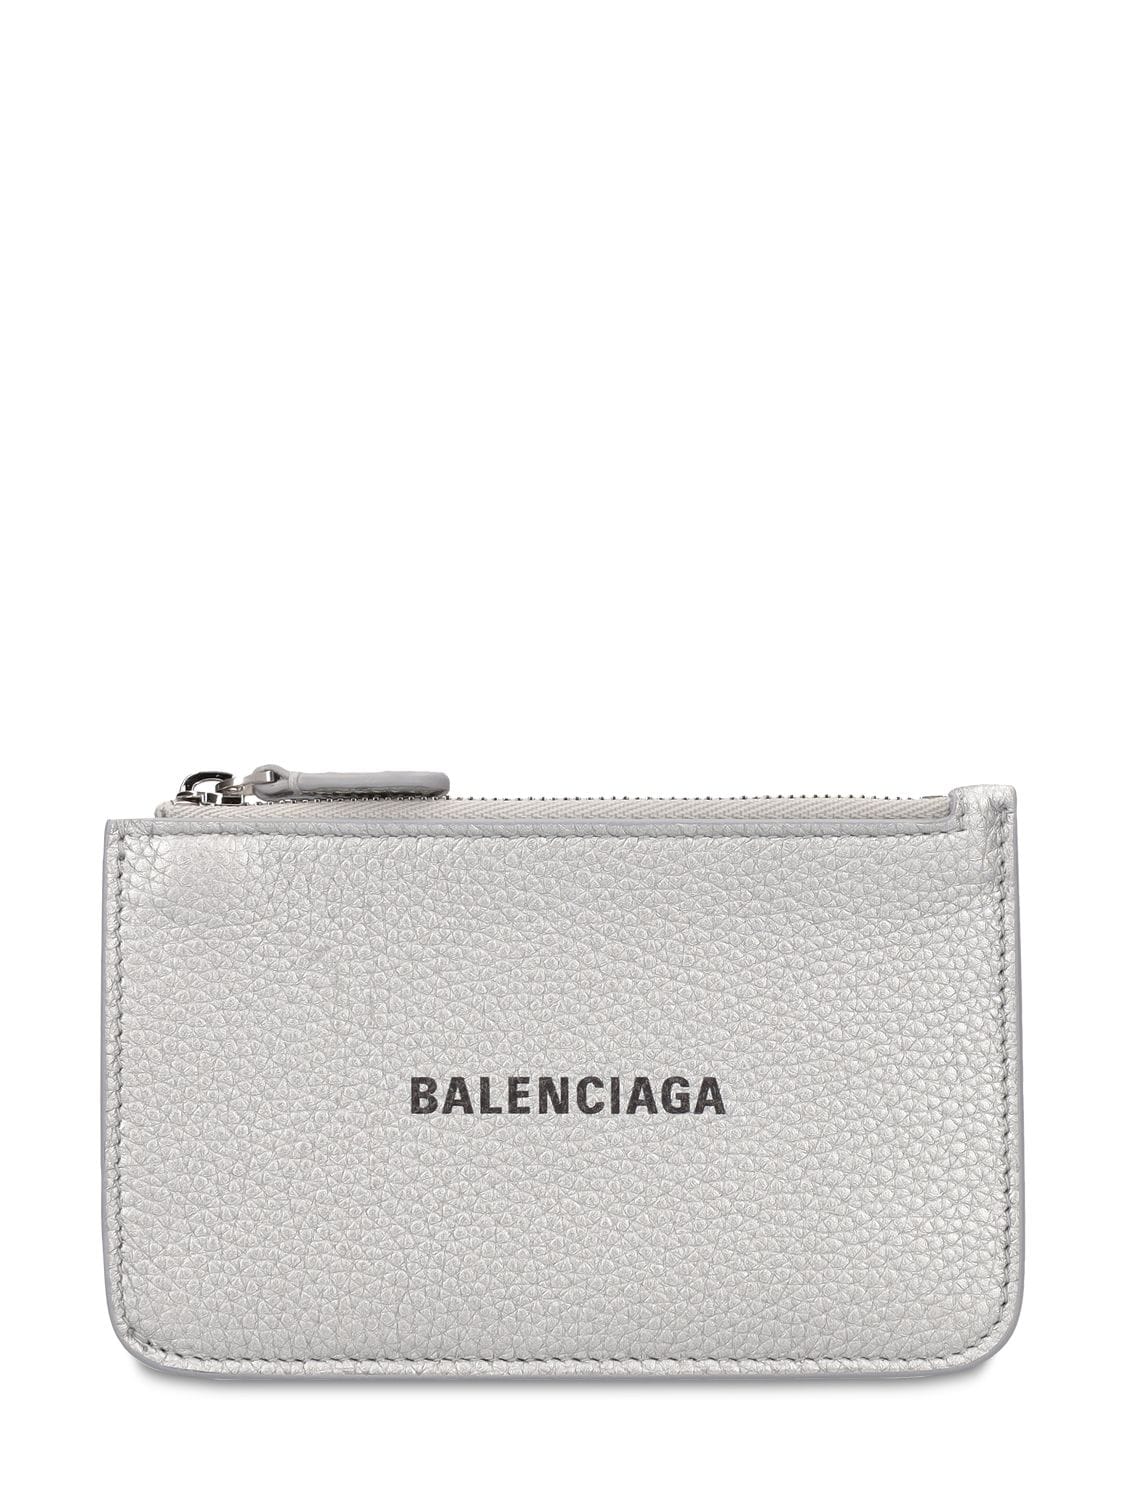 Balenciaga Zipped Metallic Leather Coin Purse In Silver